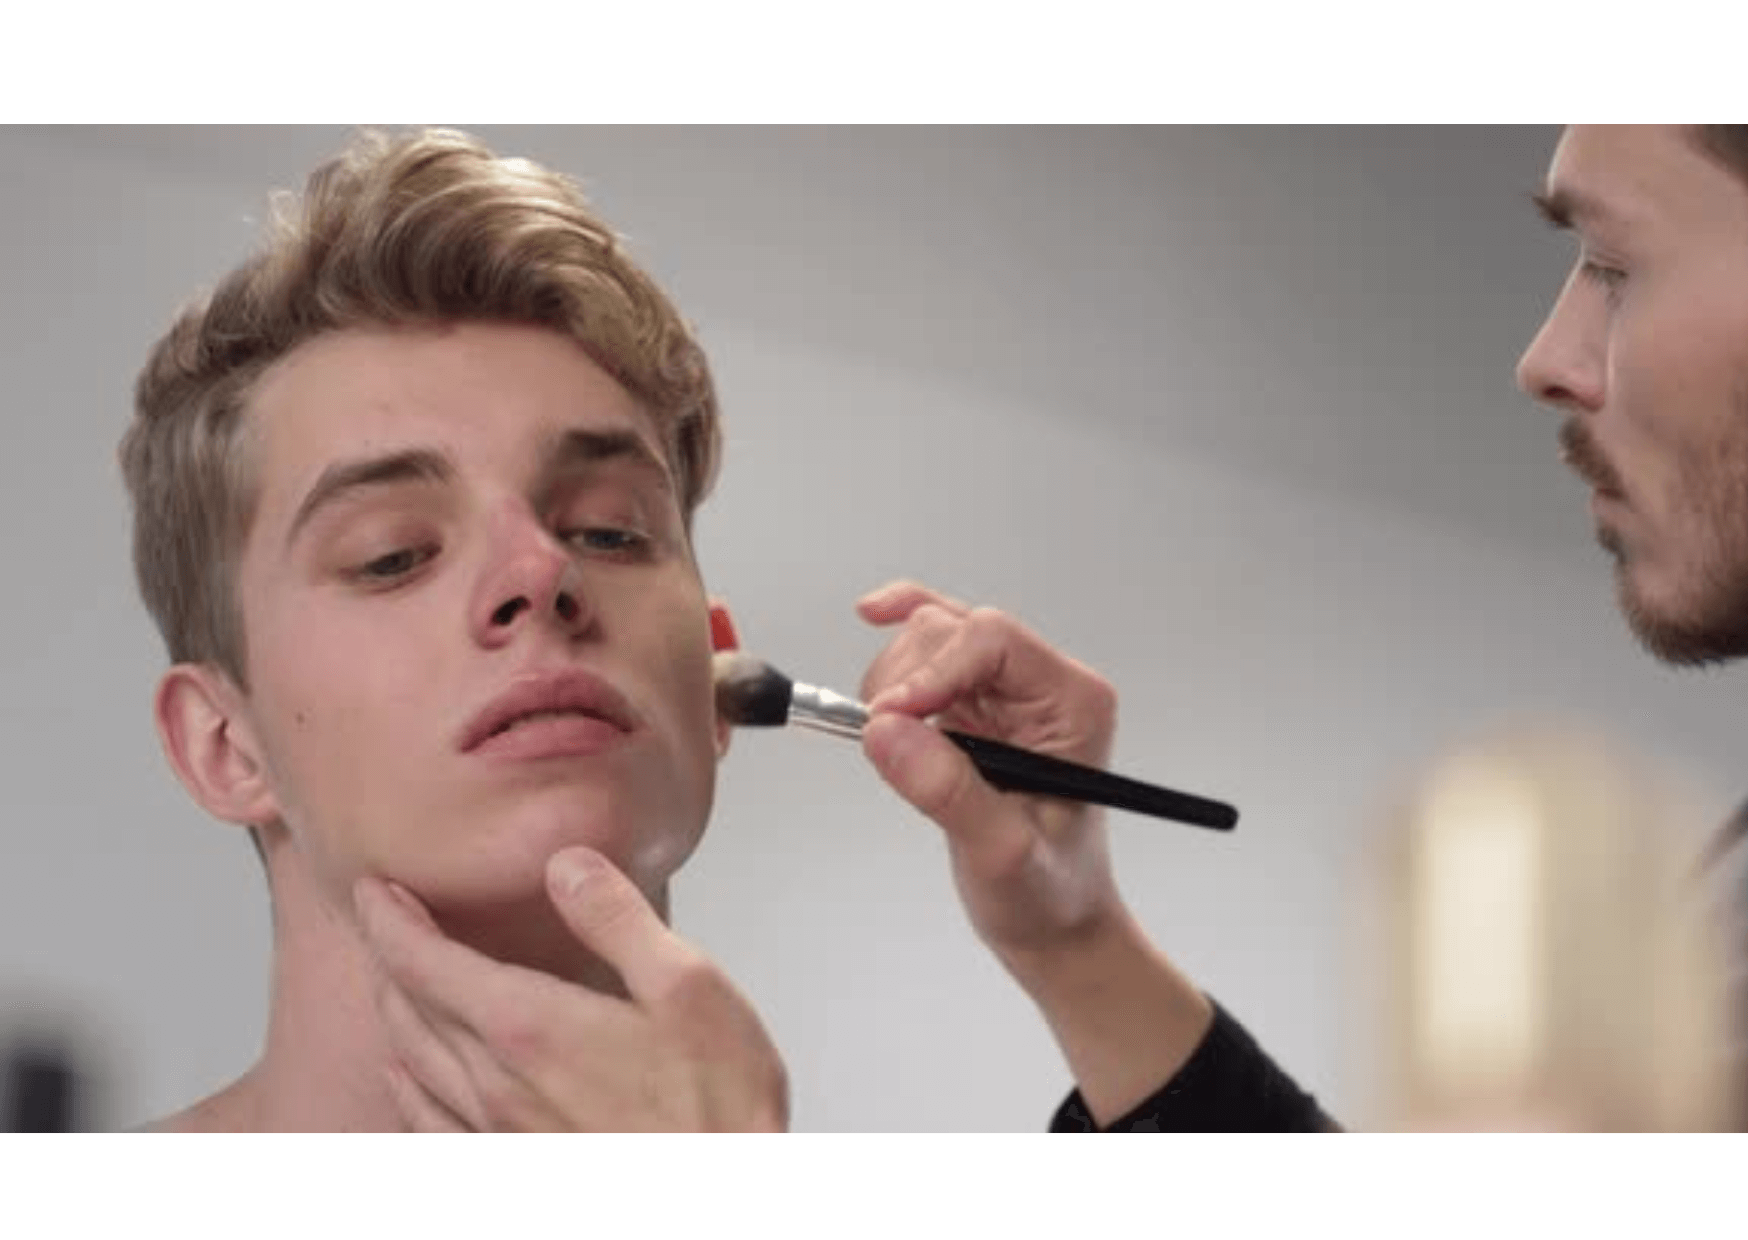 “Maskulinität trifft auf Schönheit: Ein Interview mit einem trendsetzenden männlichen Make-up-Verkäufer”